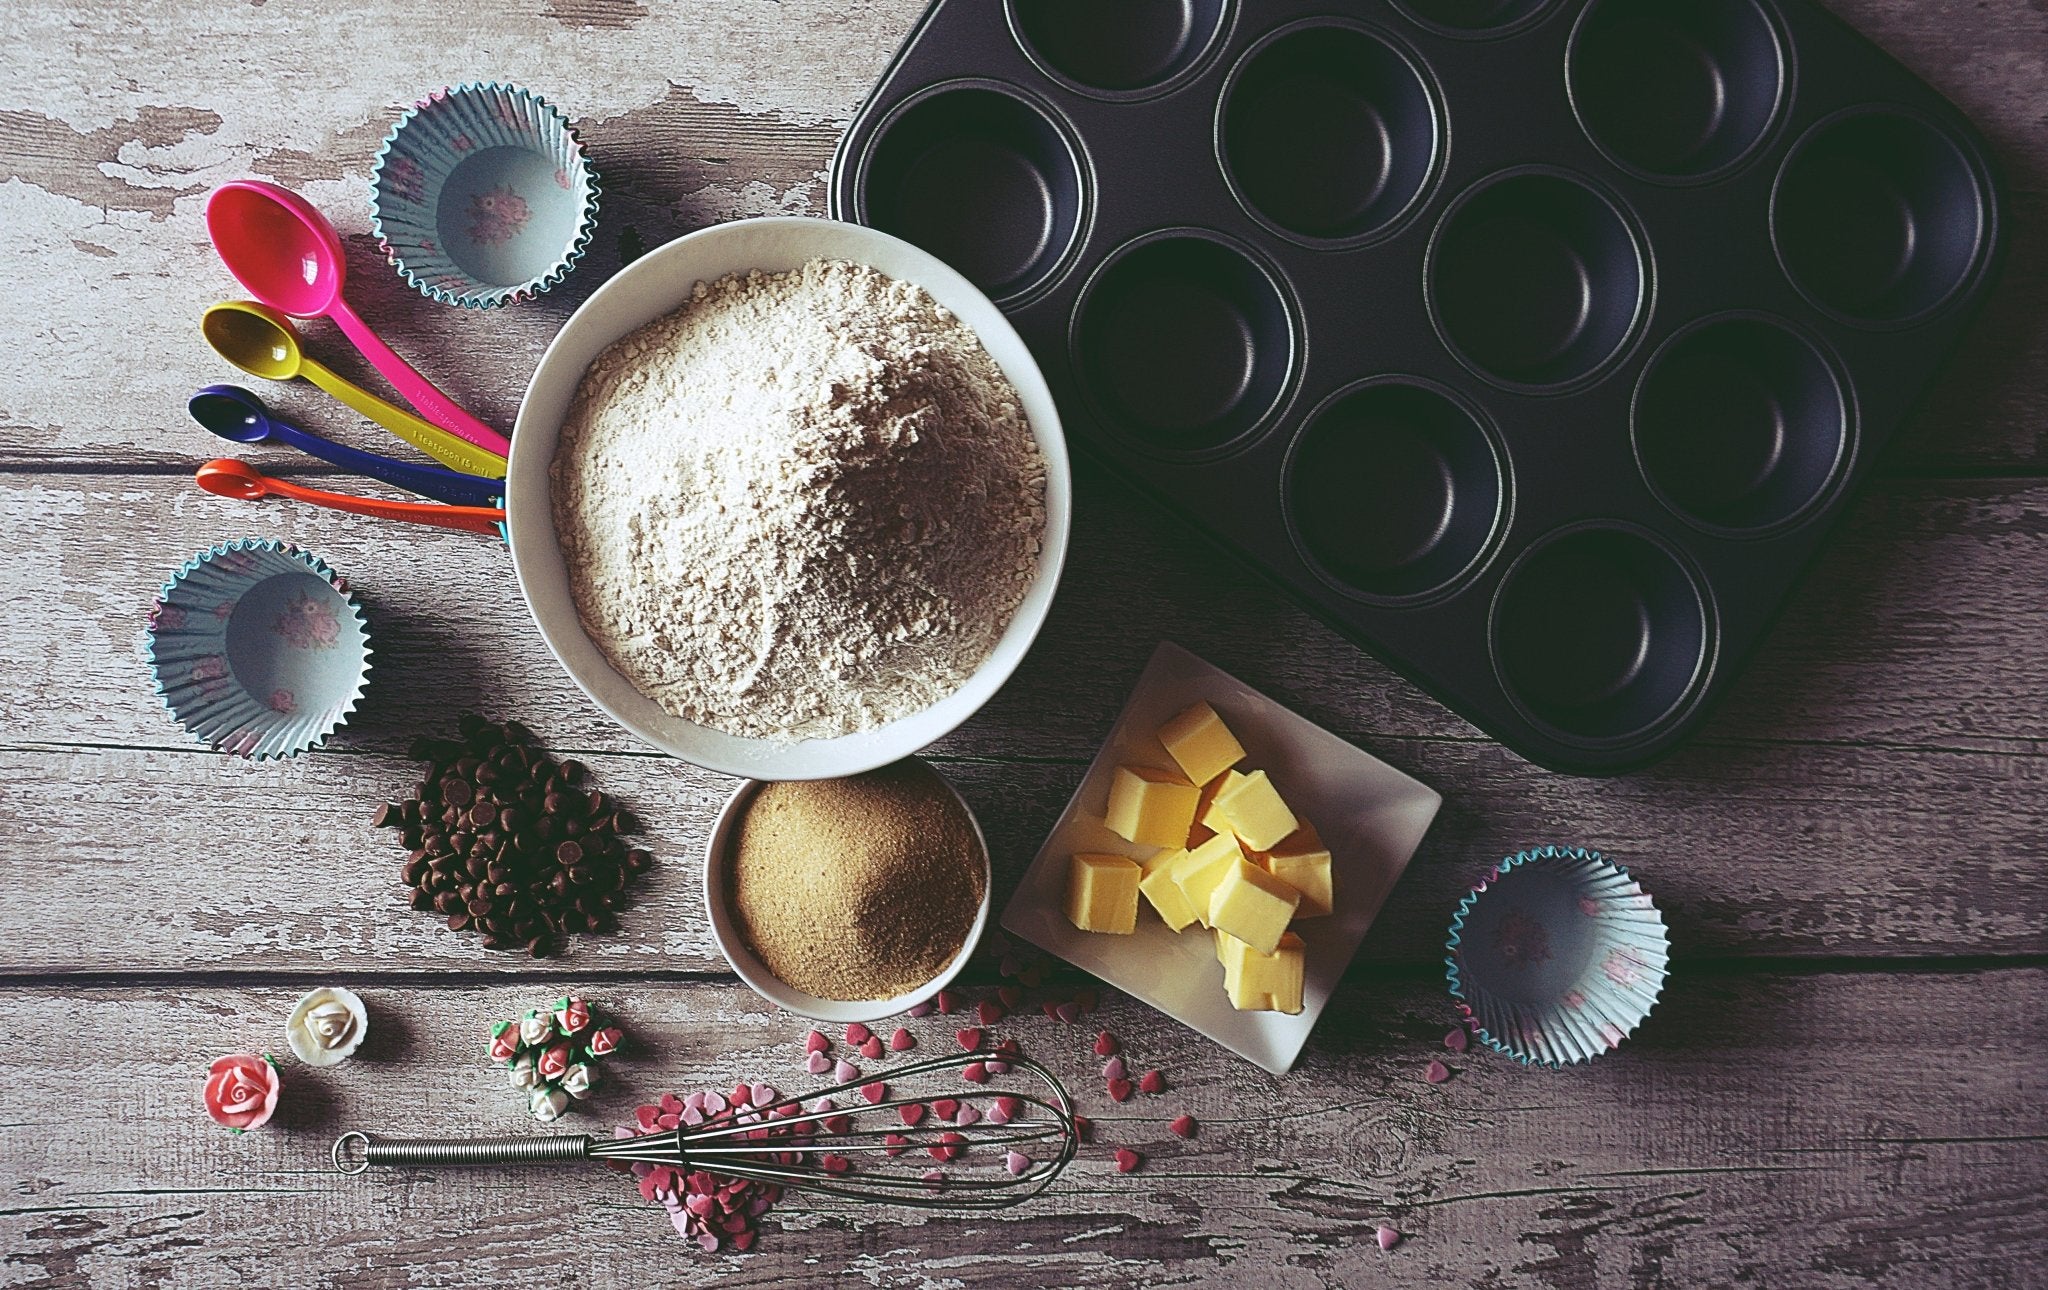 Spusht: Basic Bakeware Needs for Beginners